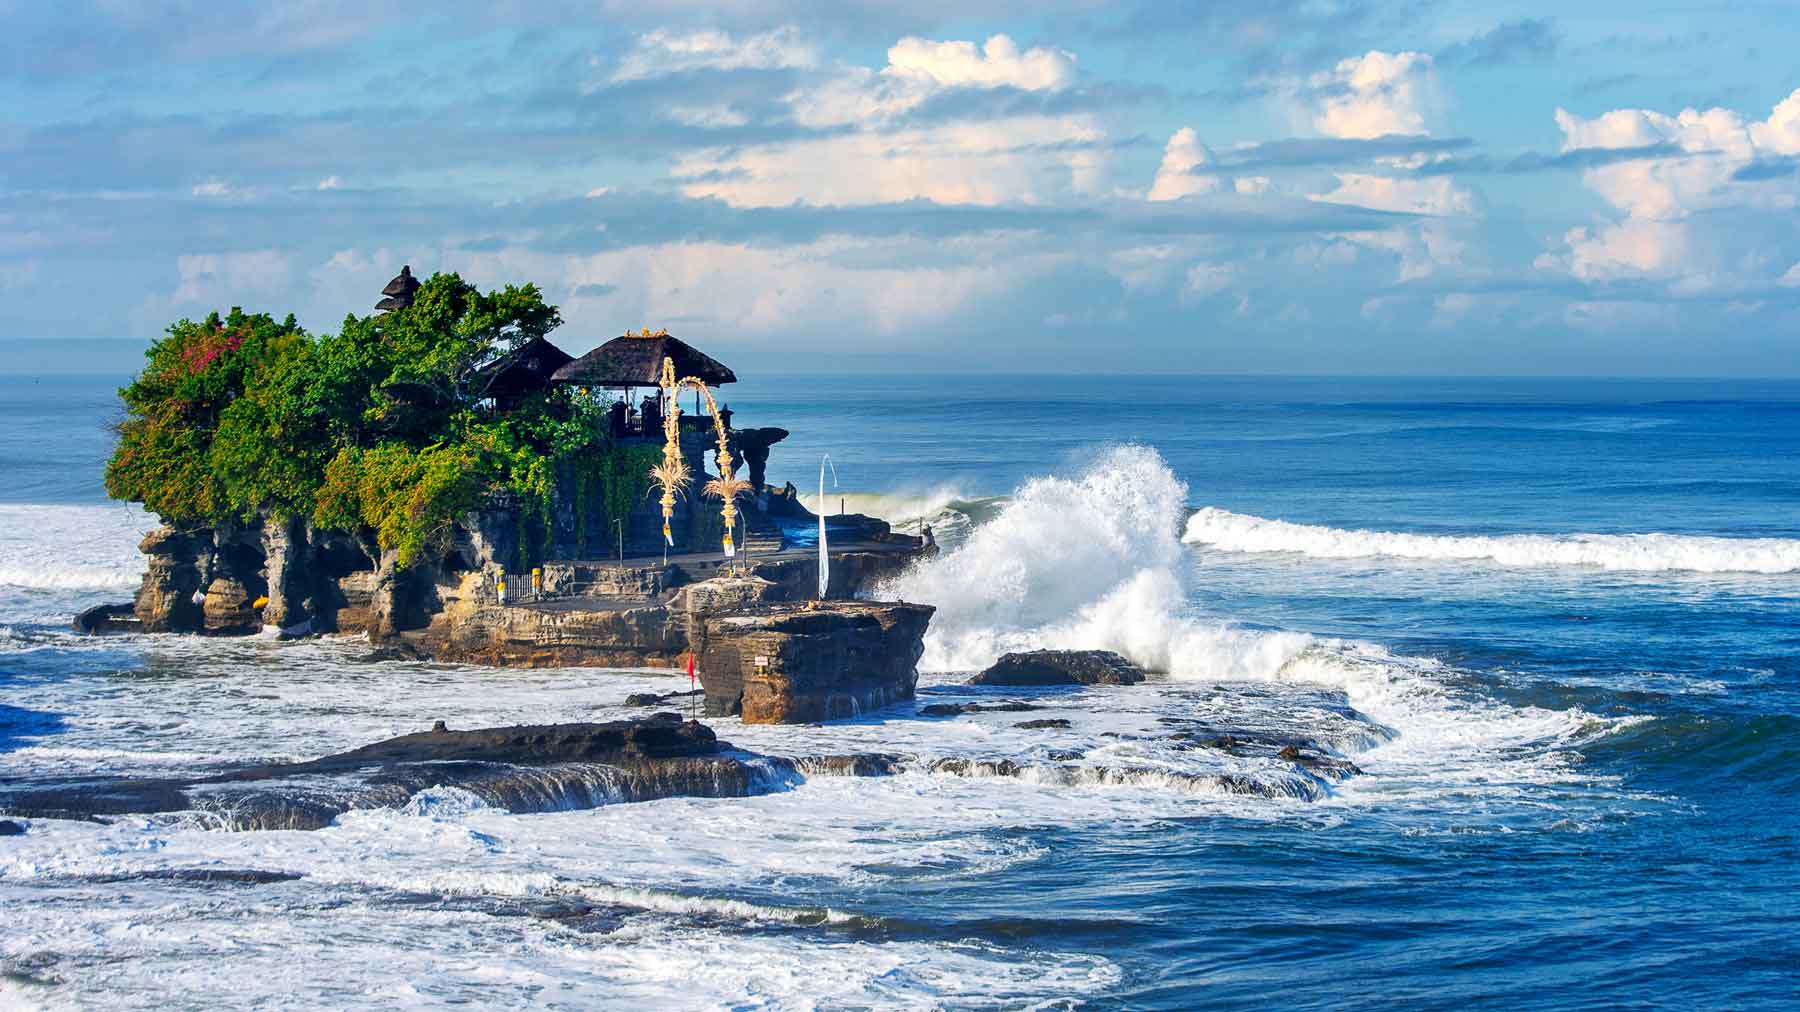 Tempat Wisata Yang Wajib Dikunjungi Di Bali Homecare